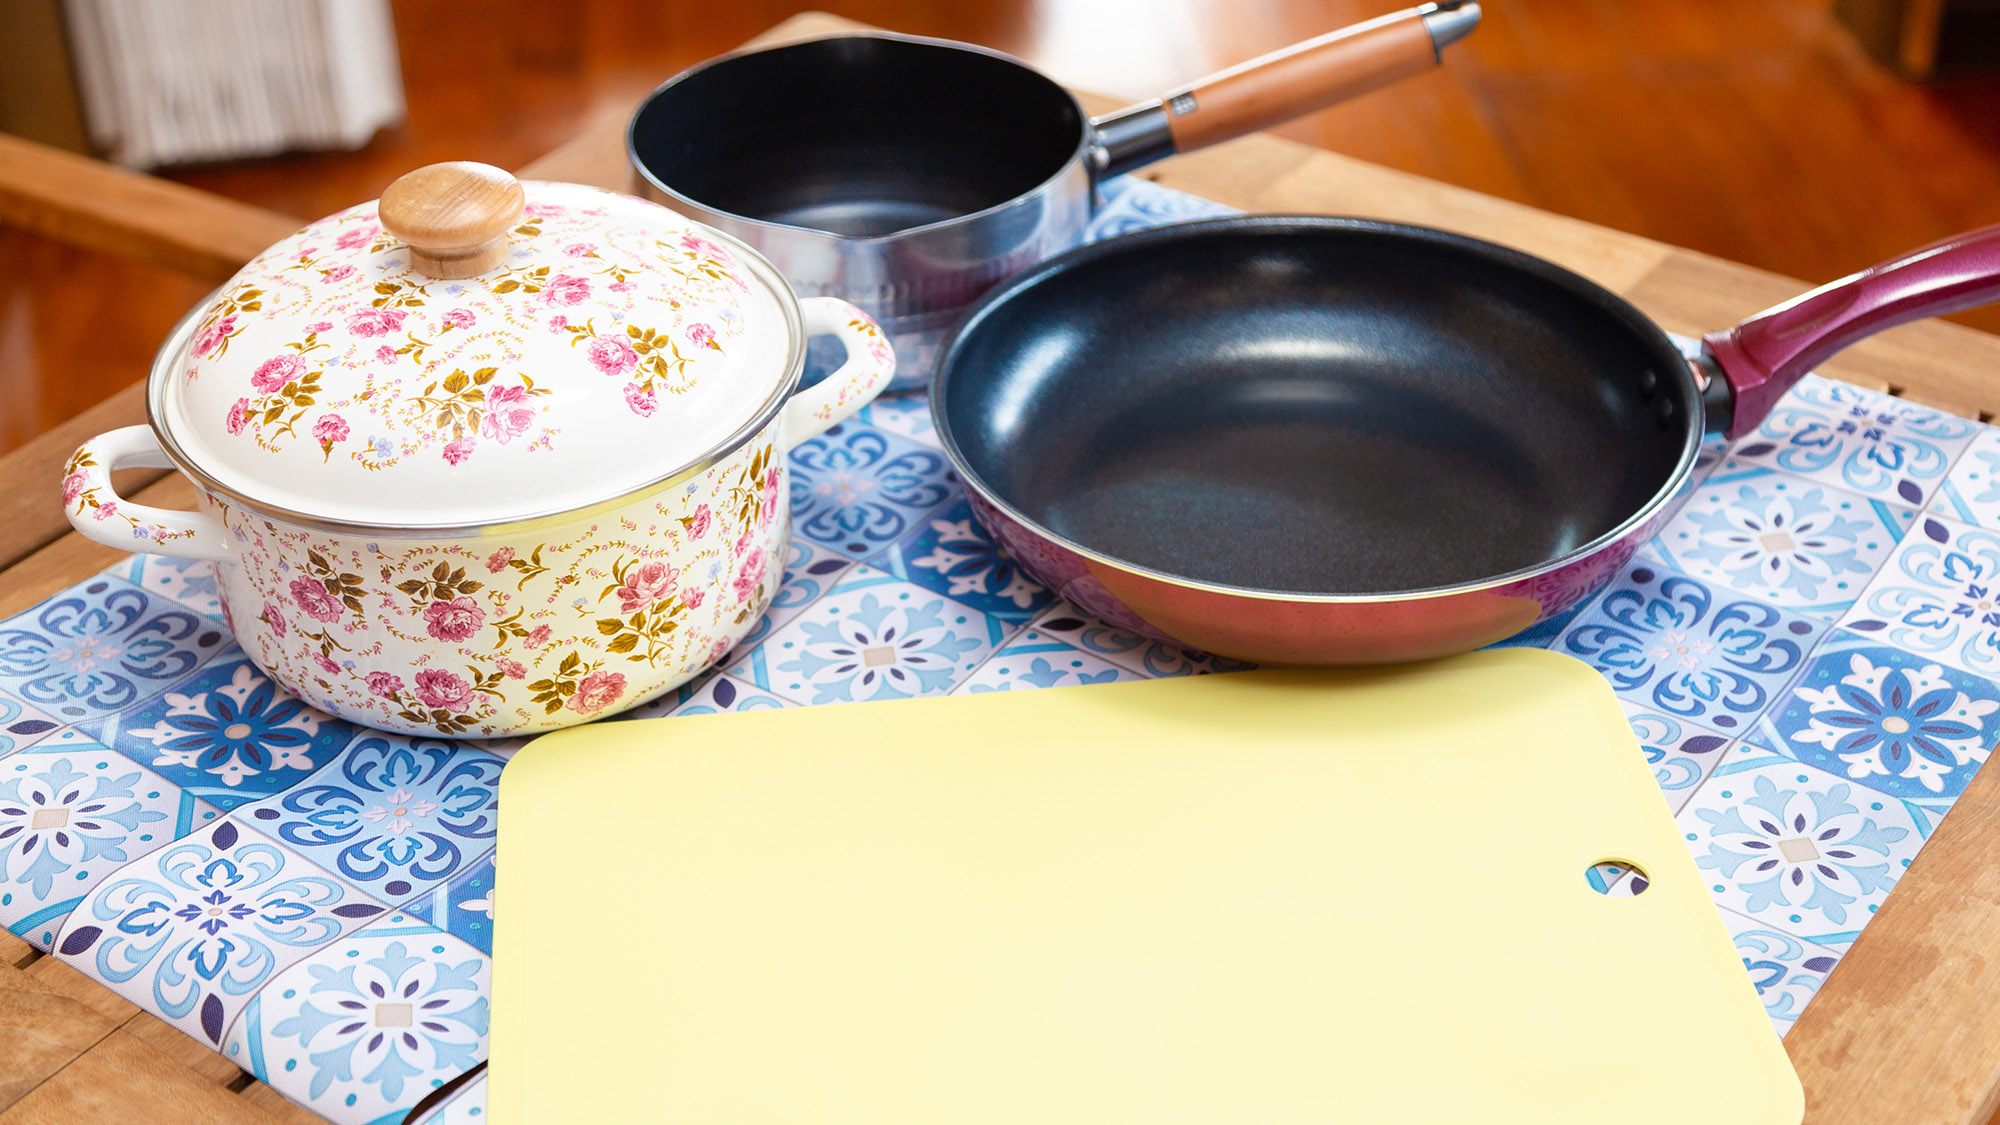 ・【キッチン】鍋・フライパン・まな板をご用意。しっかりとお料理ができます